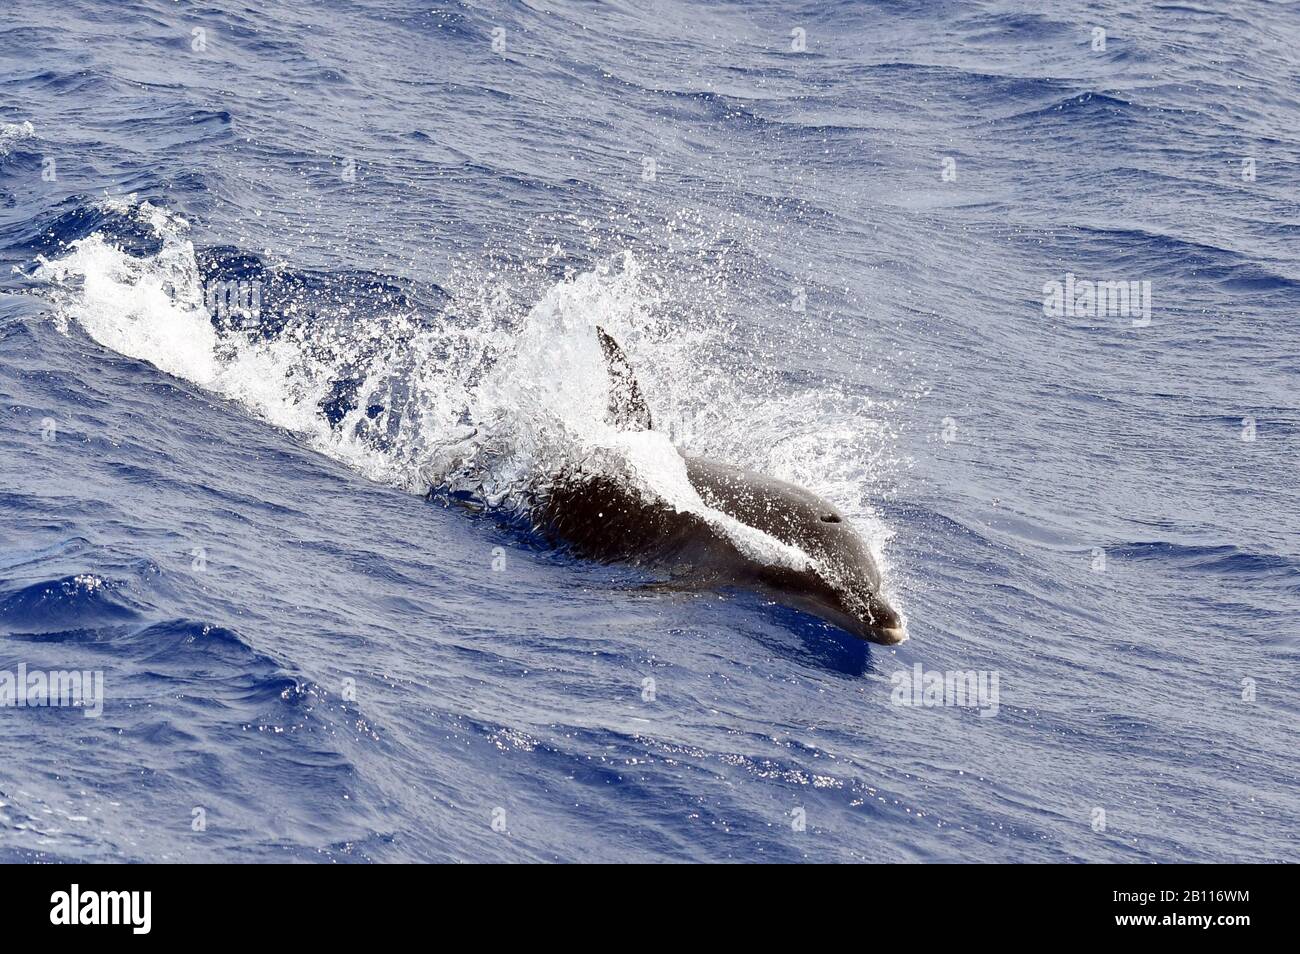 Bottlenosed dolphin, Common bottle-nosed dolphin (Tursiops truncatus), swimming in the open ocean, Atlantic Ocean Stock Photo